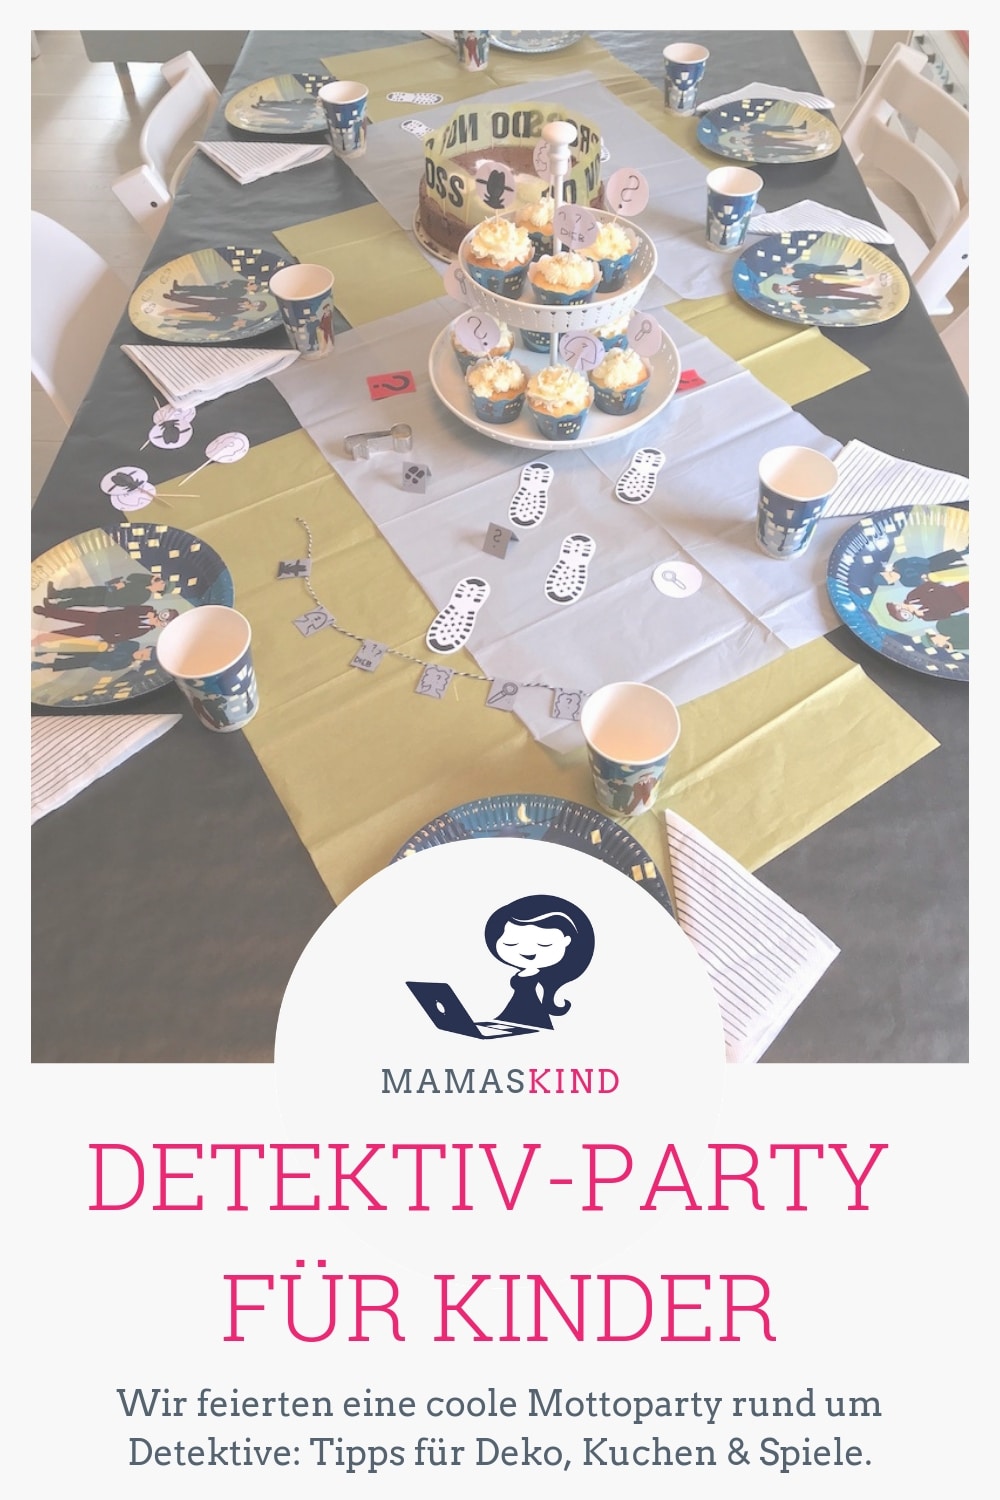 Mottoparty: Detektive zum Kindergeburtstag. Wir haben uns einiges überlegt und planten Spiele, Deko und leckere Kuchen für die Kinder! | Mehr Infos und Bilder gibt es auf dem Mamablog Mamaskind.de